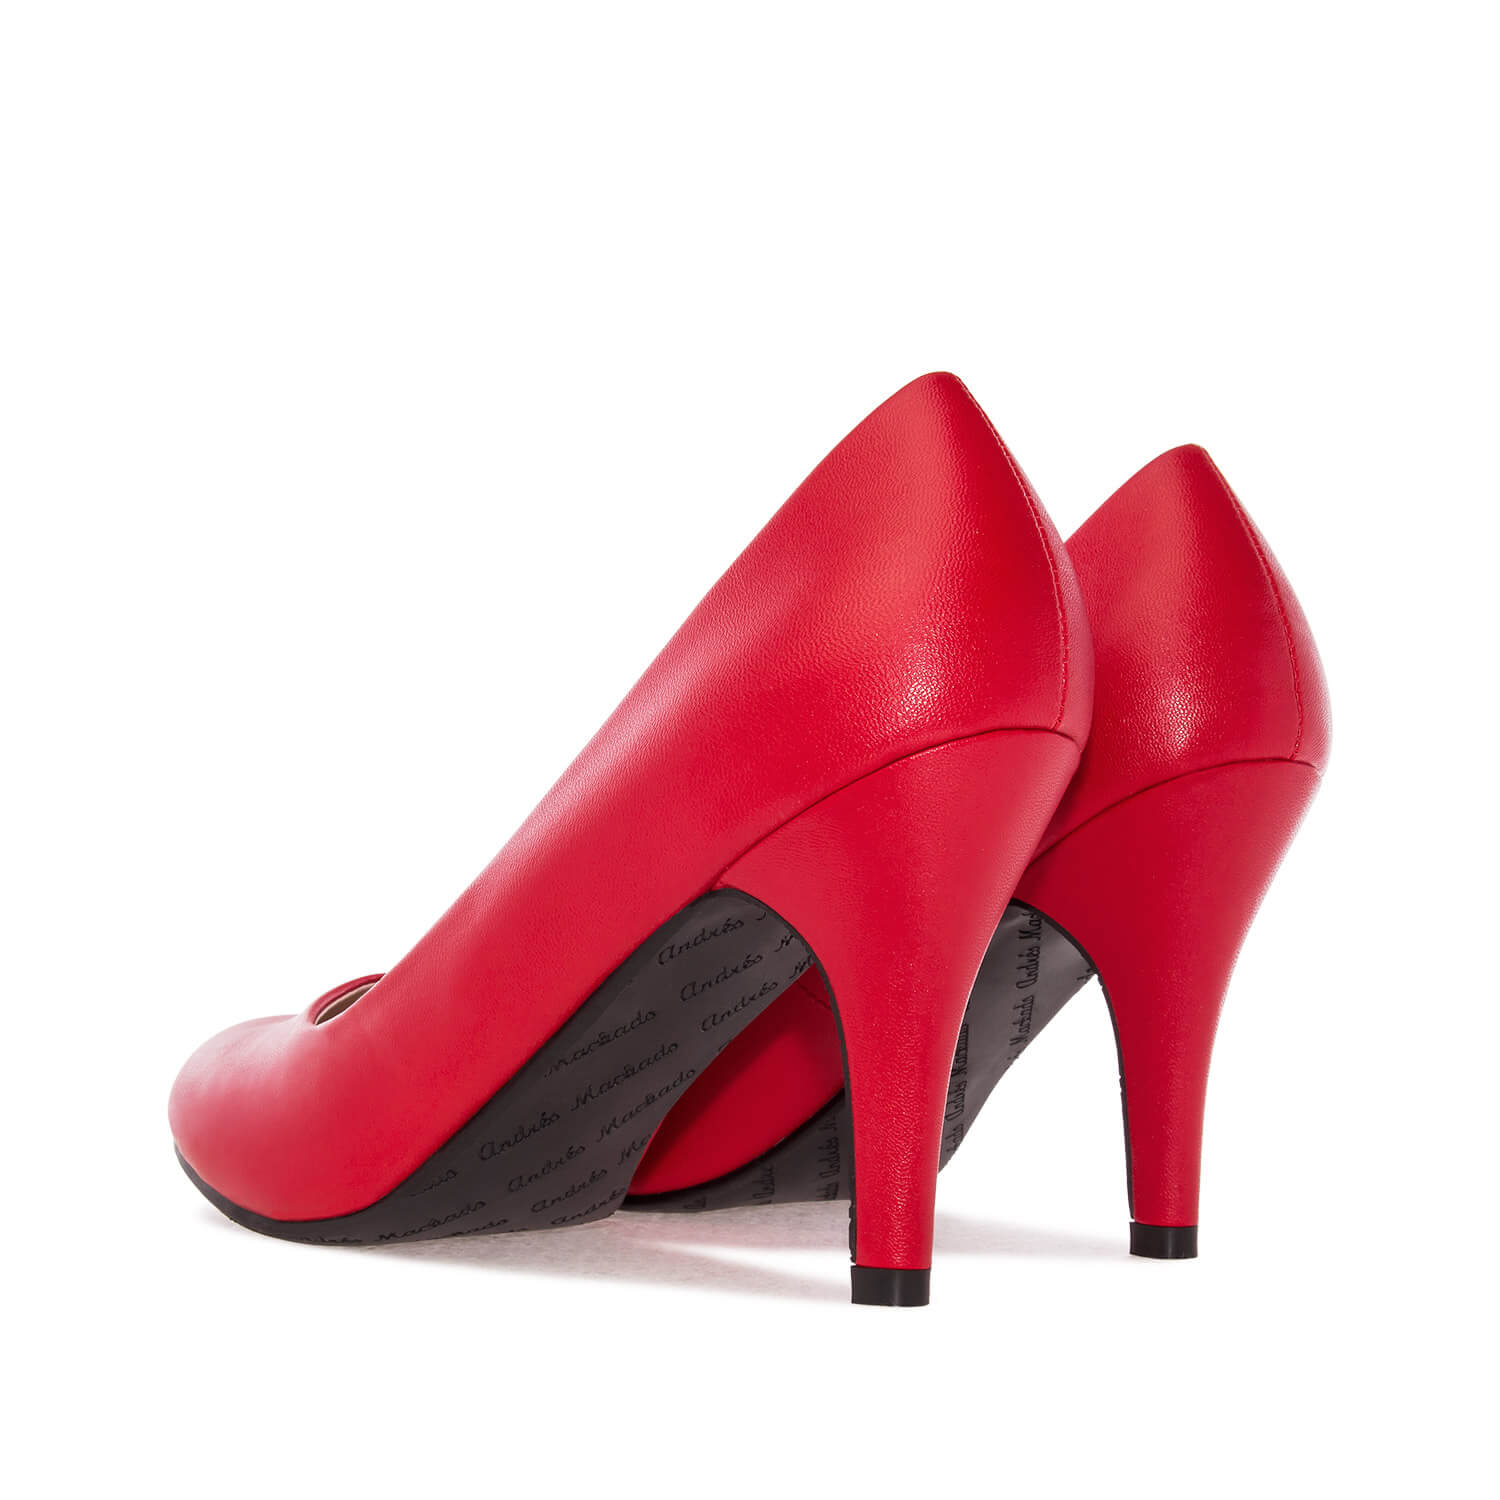 Zapatos de Salón Retro en Soft Rojo y tacón Fino de 9,5 cm. 